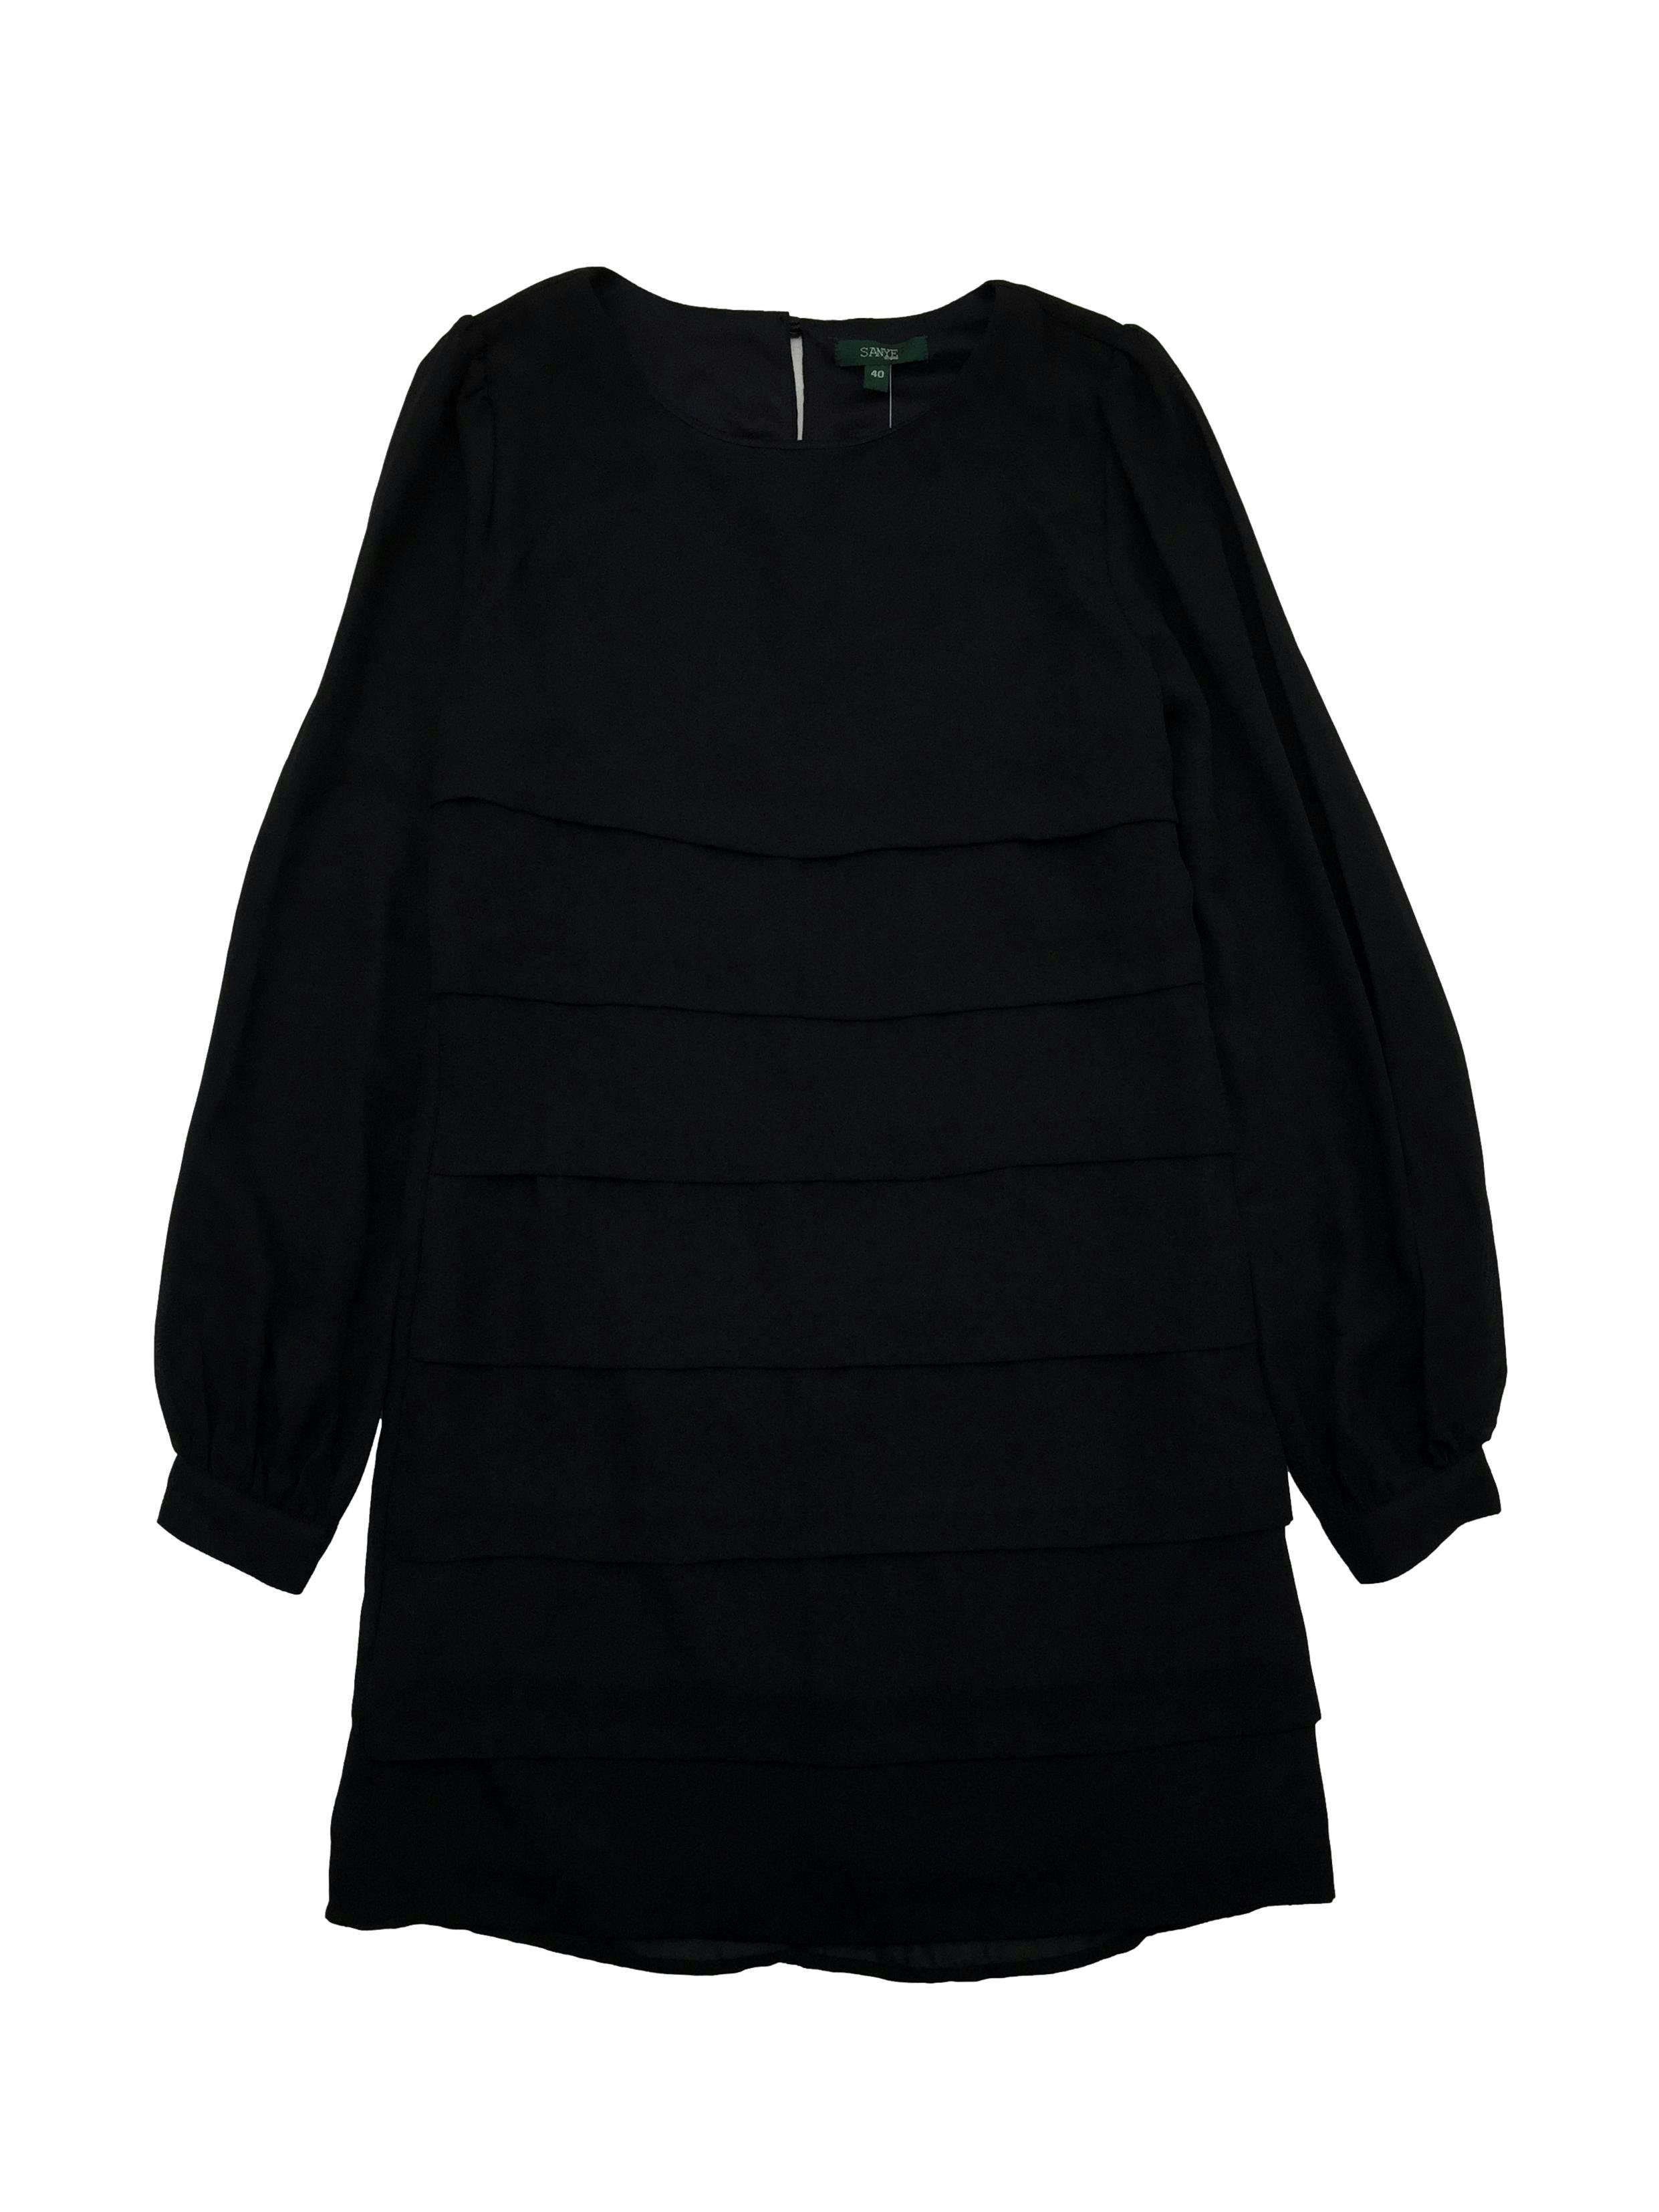 Vestido de gasa negra con capas frontales, forro, cierre lateral invisible y abertura con botón en espalda. Busto 90cm, Largo 84cm.